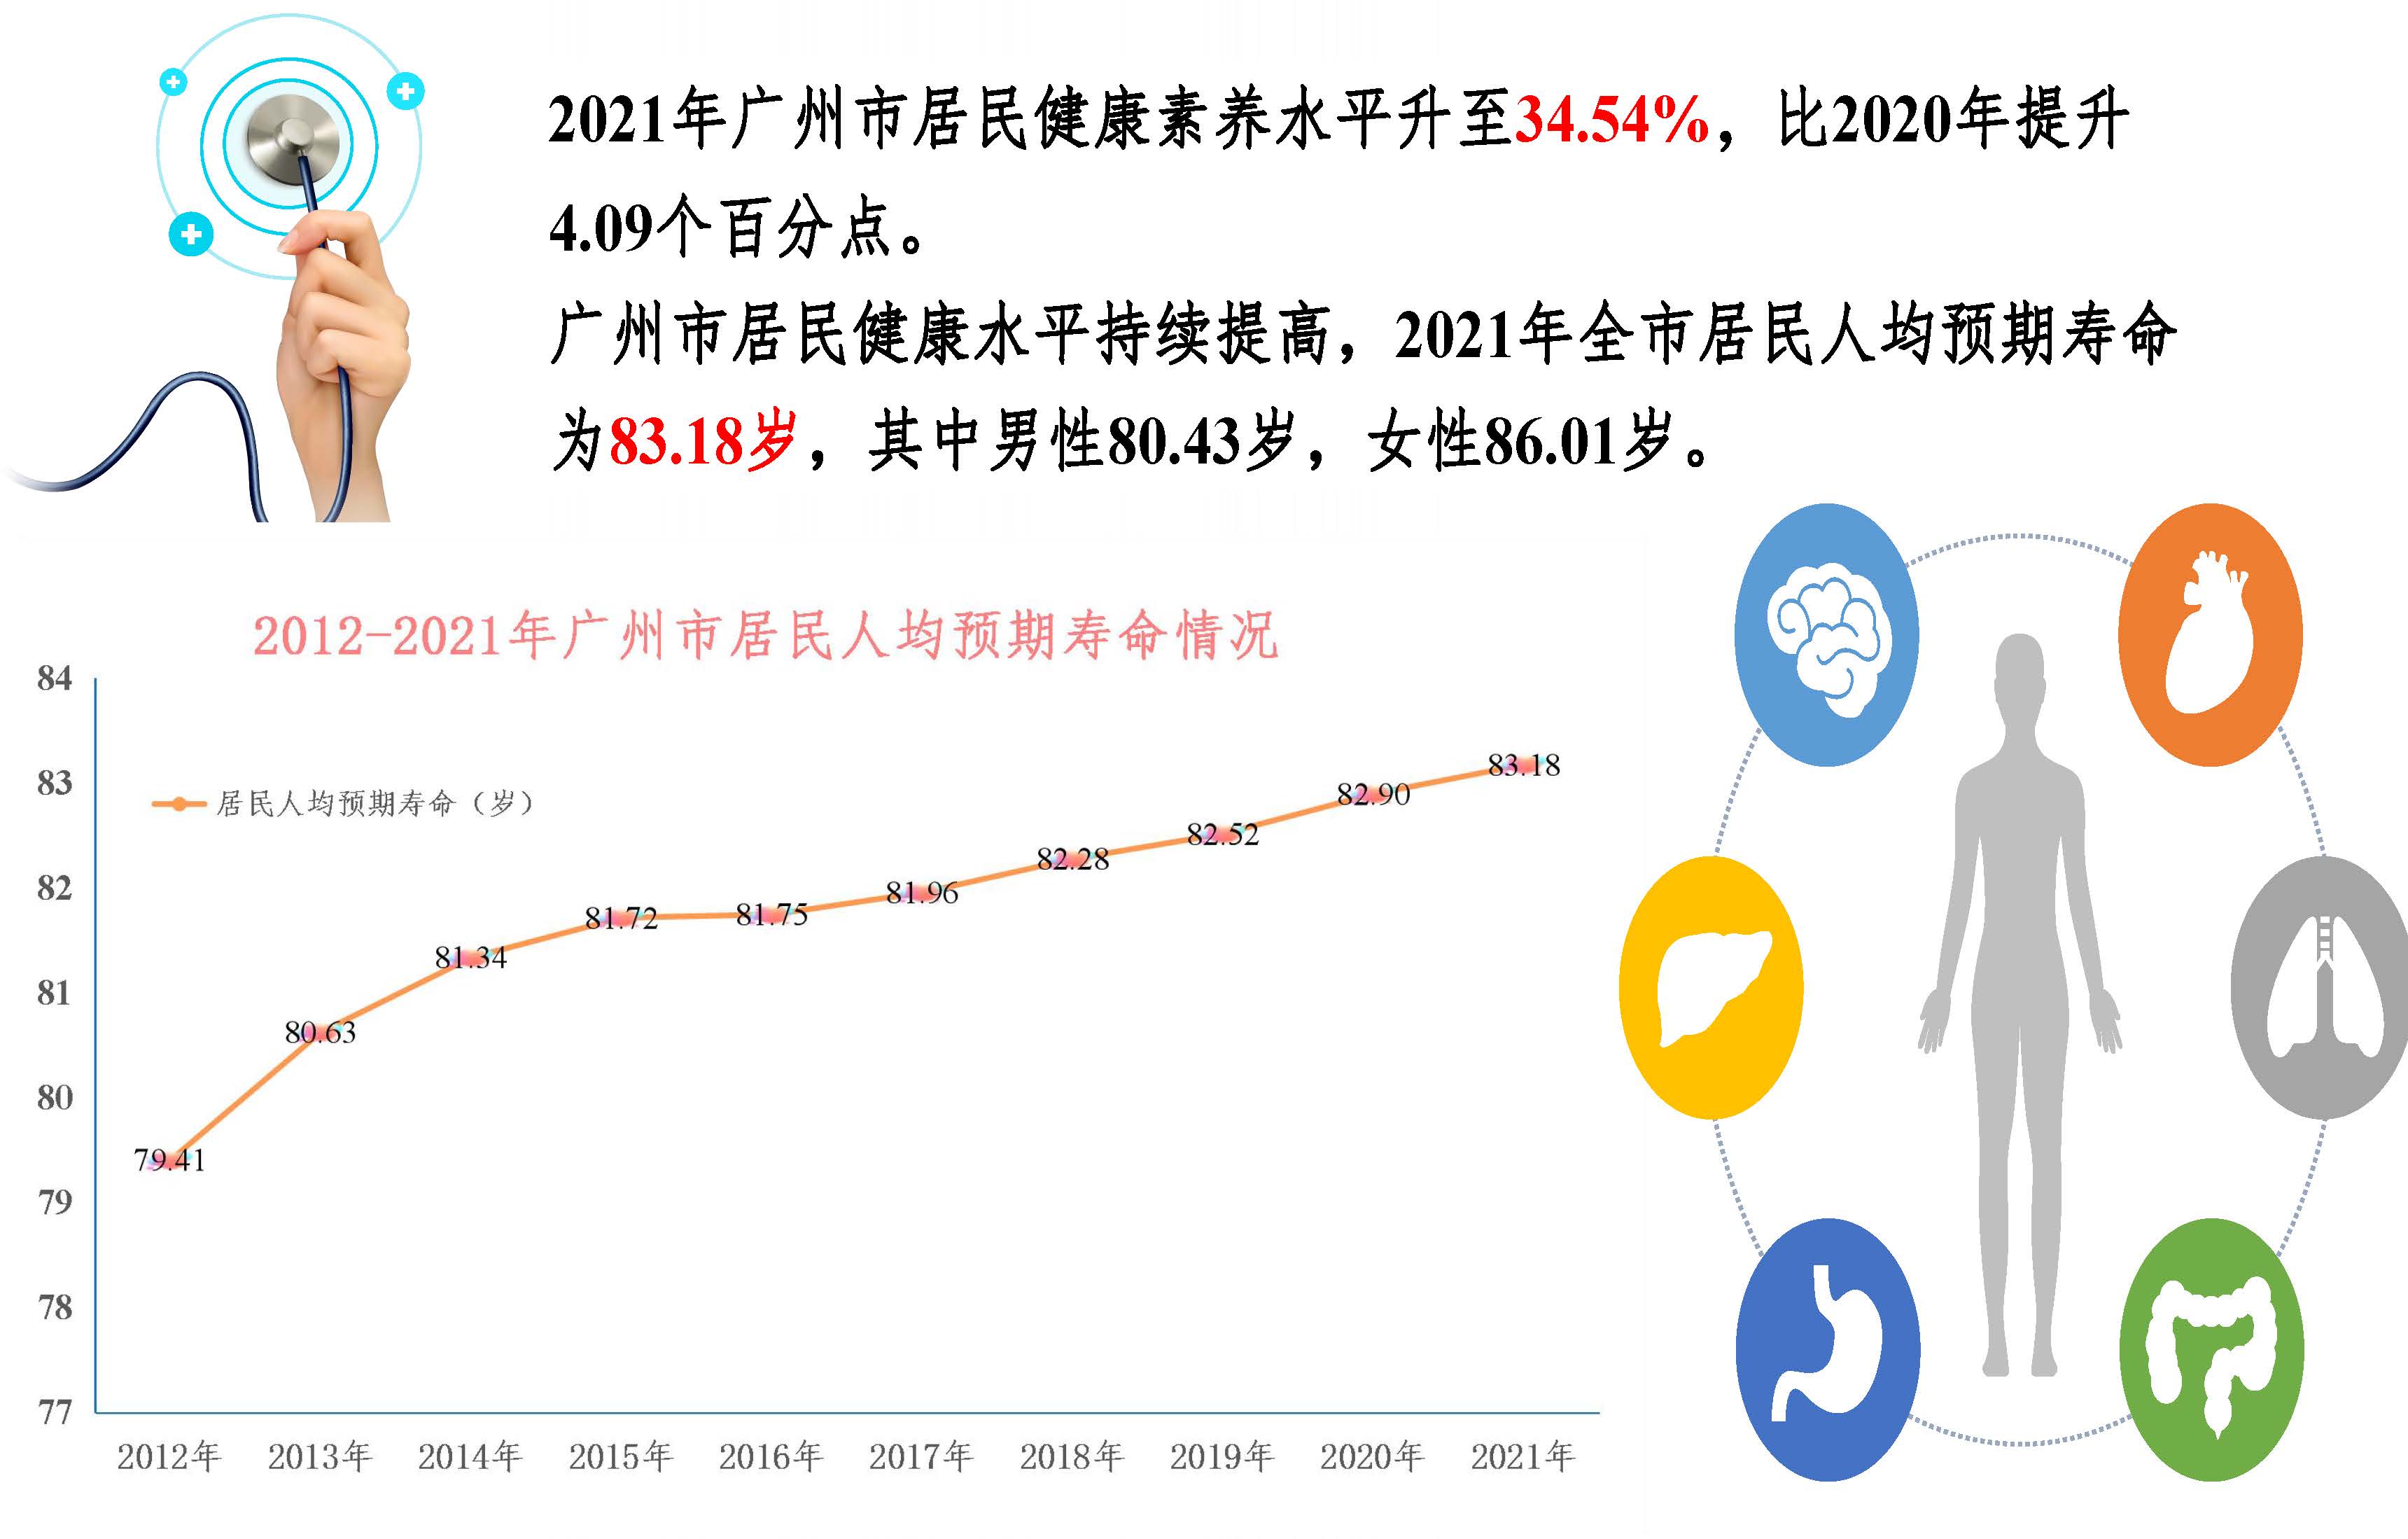 图解2021年广州市卫生事业发展情况20220424817_页面_01.jpg